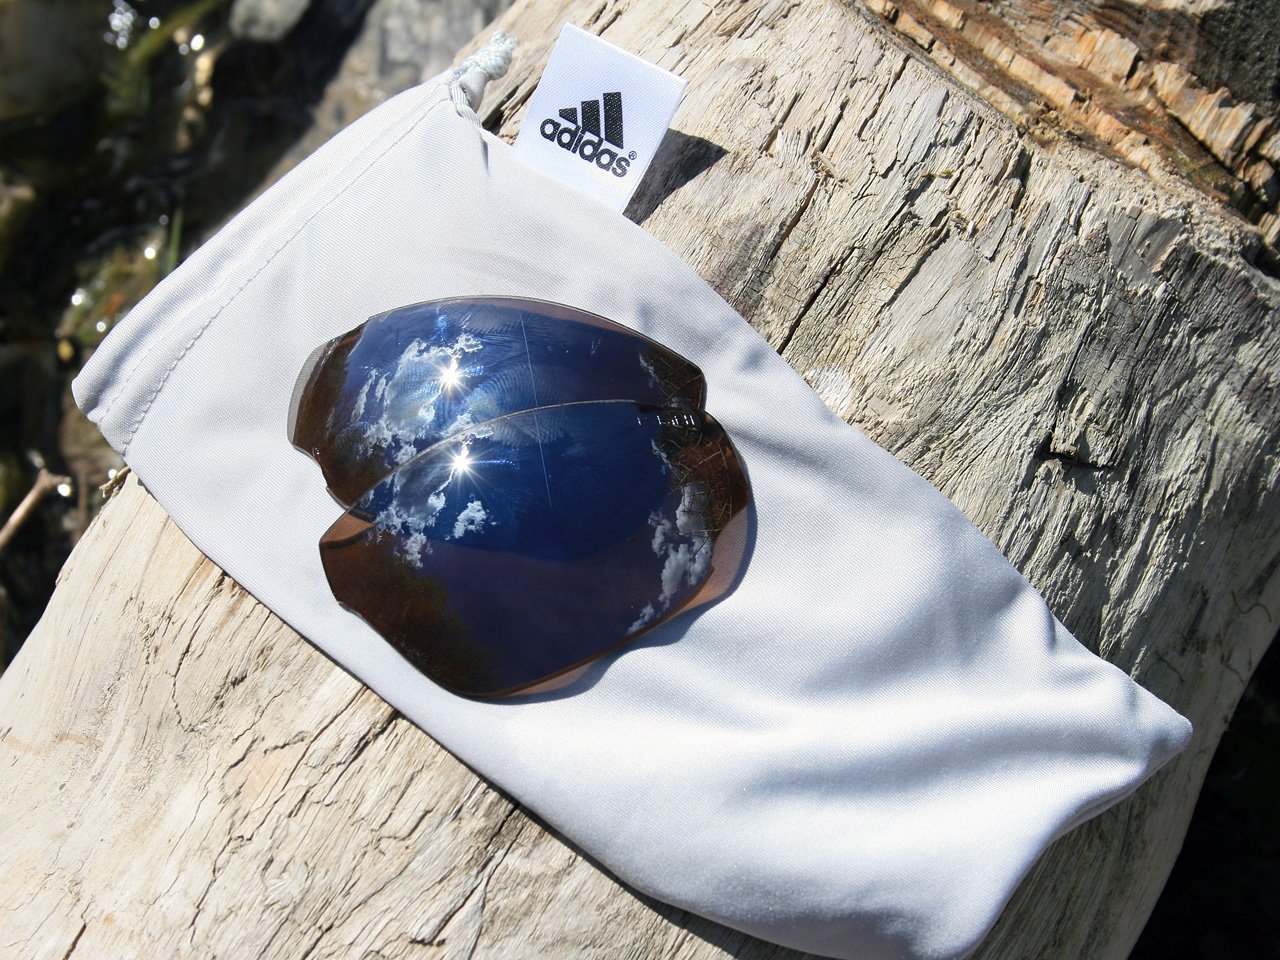 Testbericht – adidas Sport eyewear tycane pro outdoor: Die erhältlichen Wechselfilter für die tycane pro outdoor erhöhen den Einsatzbereich der Brille enorm. (©airFreshing.com)